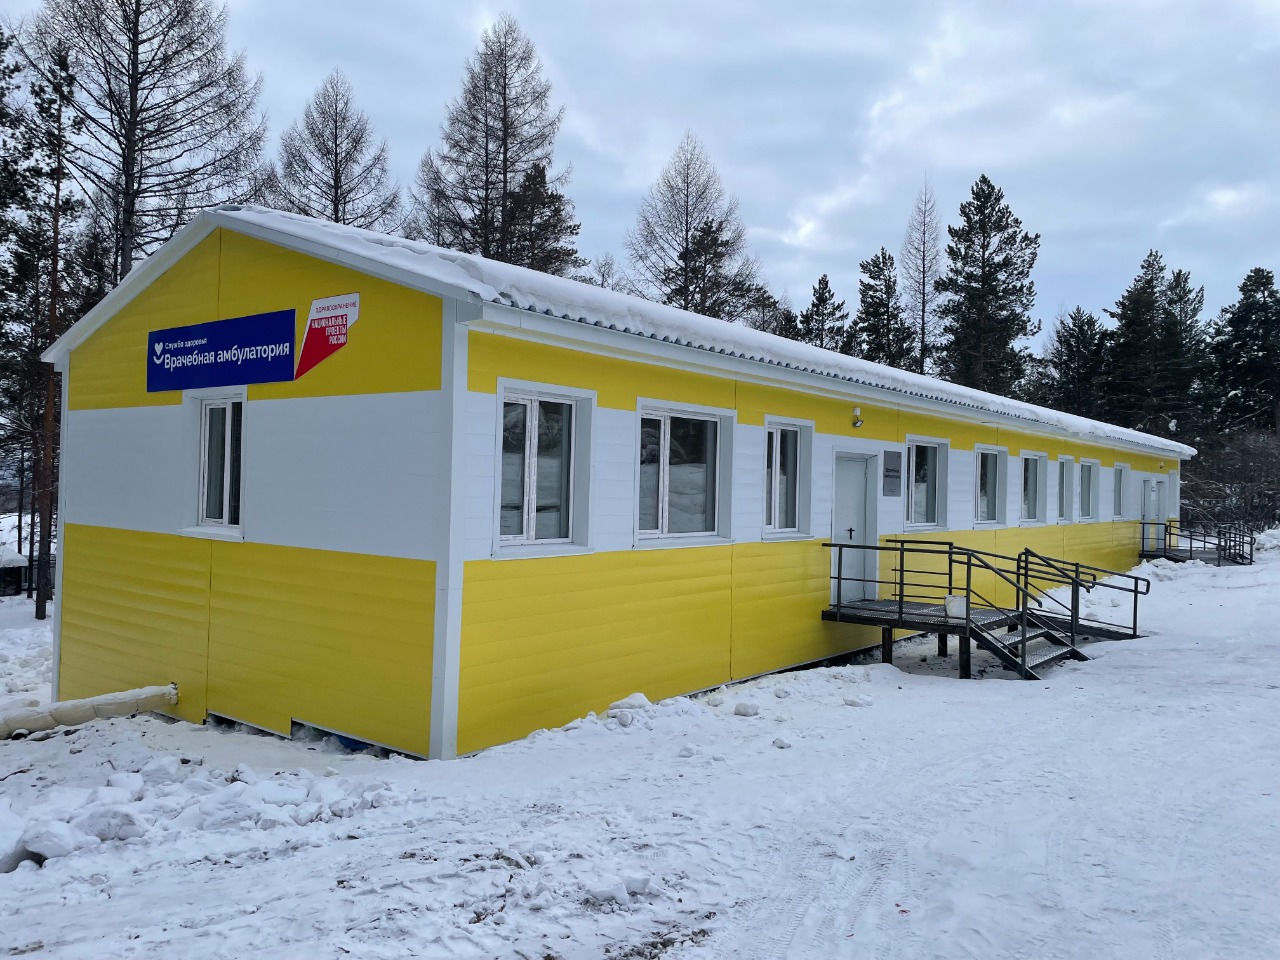 Врачебную амбулаторию открыли в селе Иенгра Нерюнгринского района Якутии